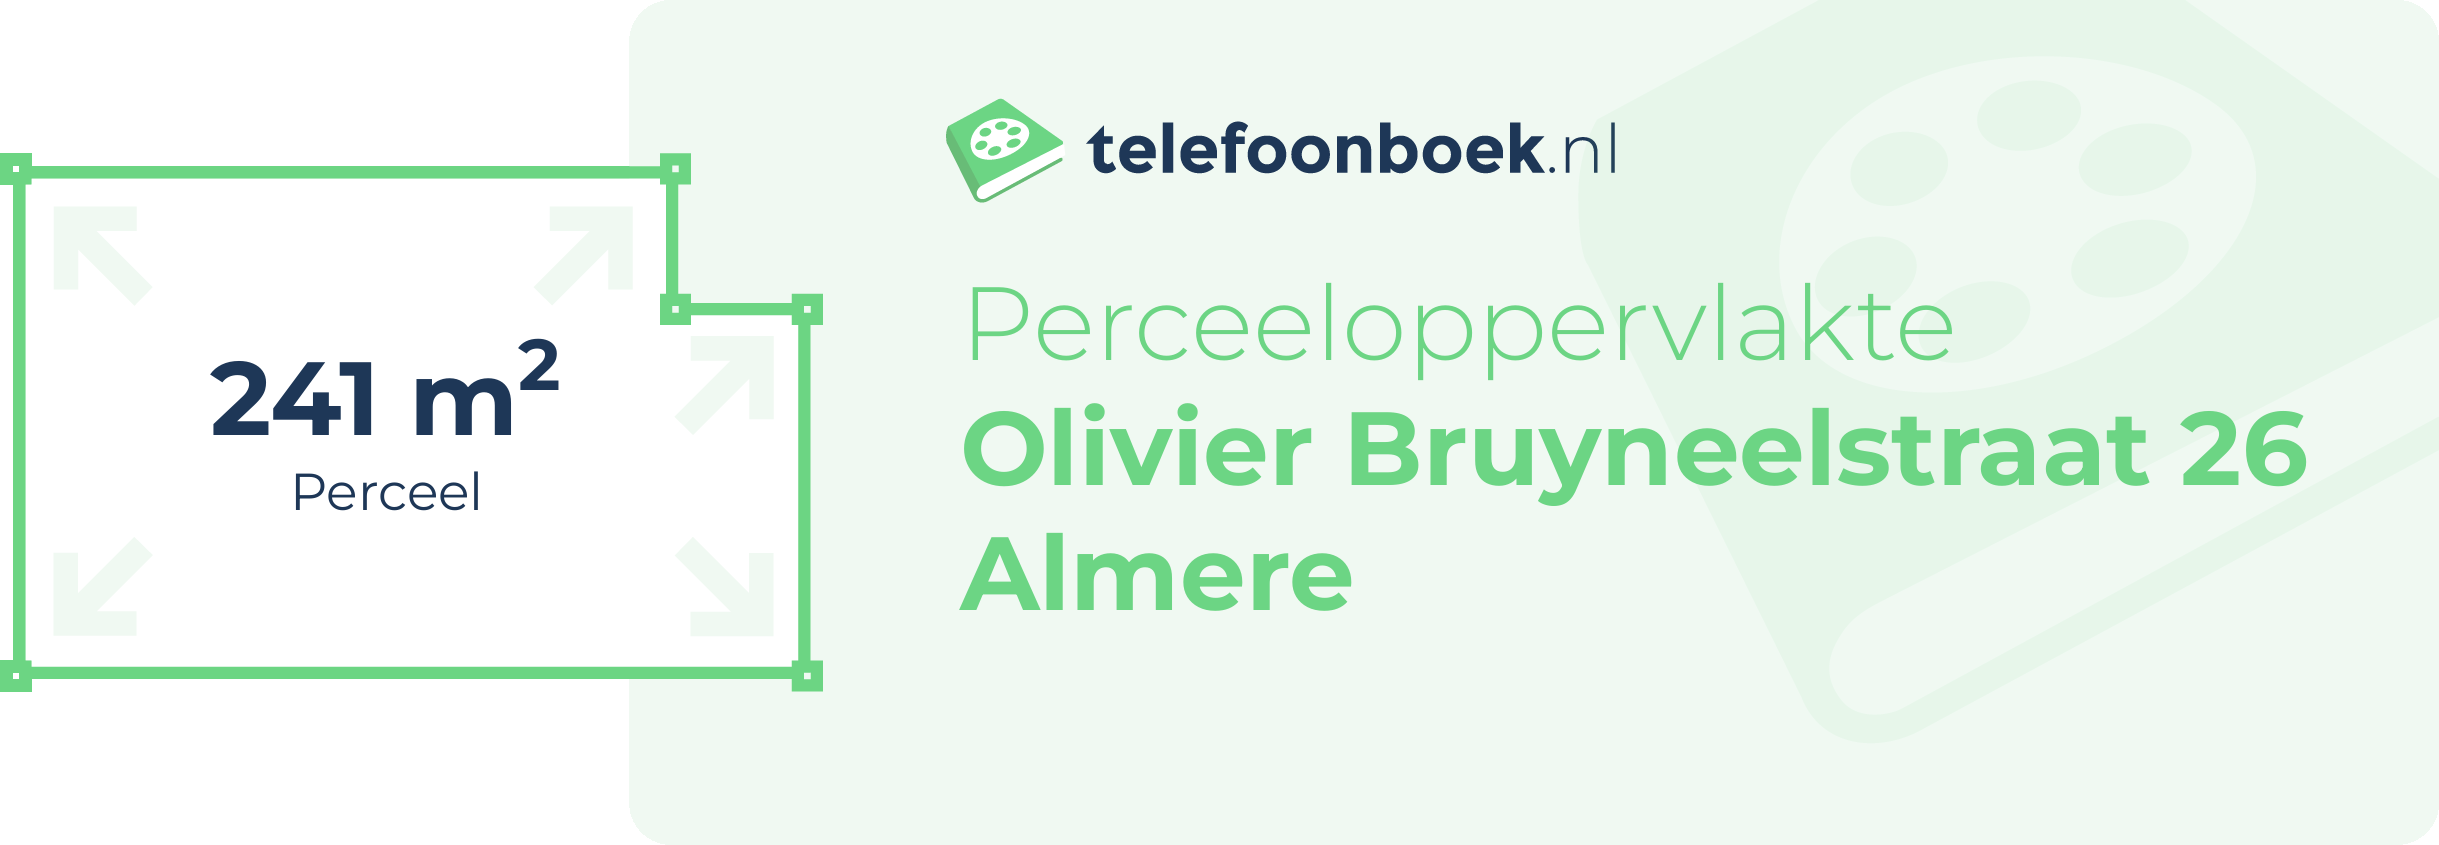 Perceeloppervlakte Olivier Bruyneelstraat 26 Almere